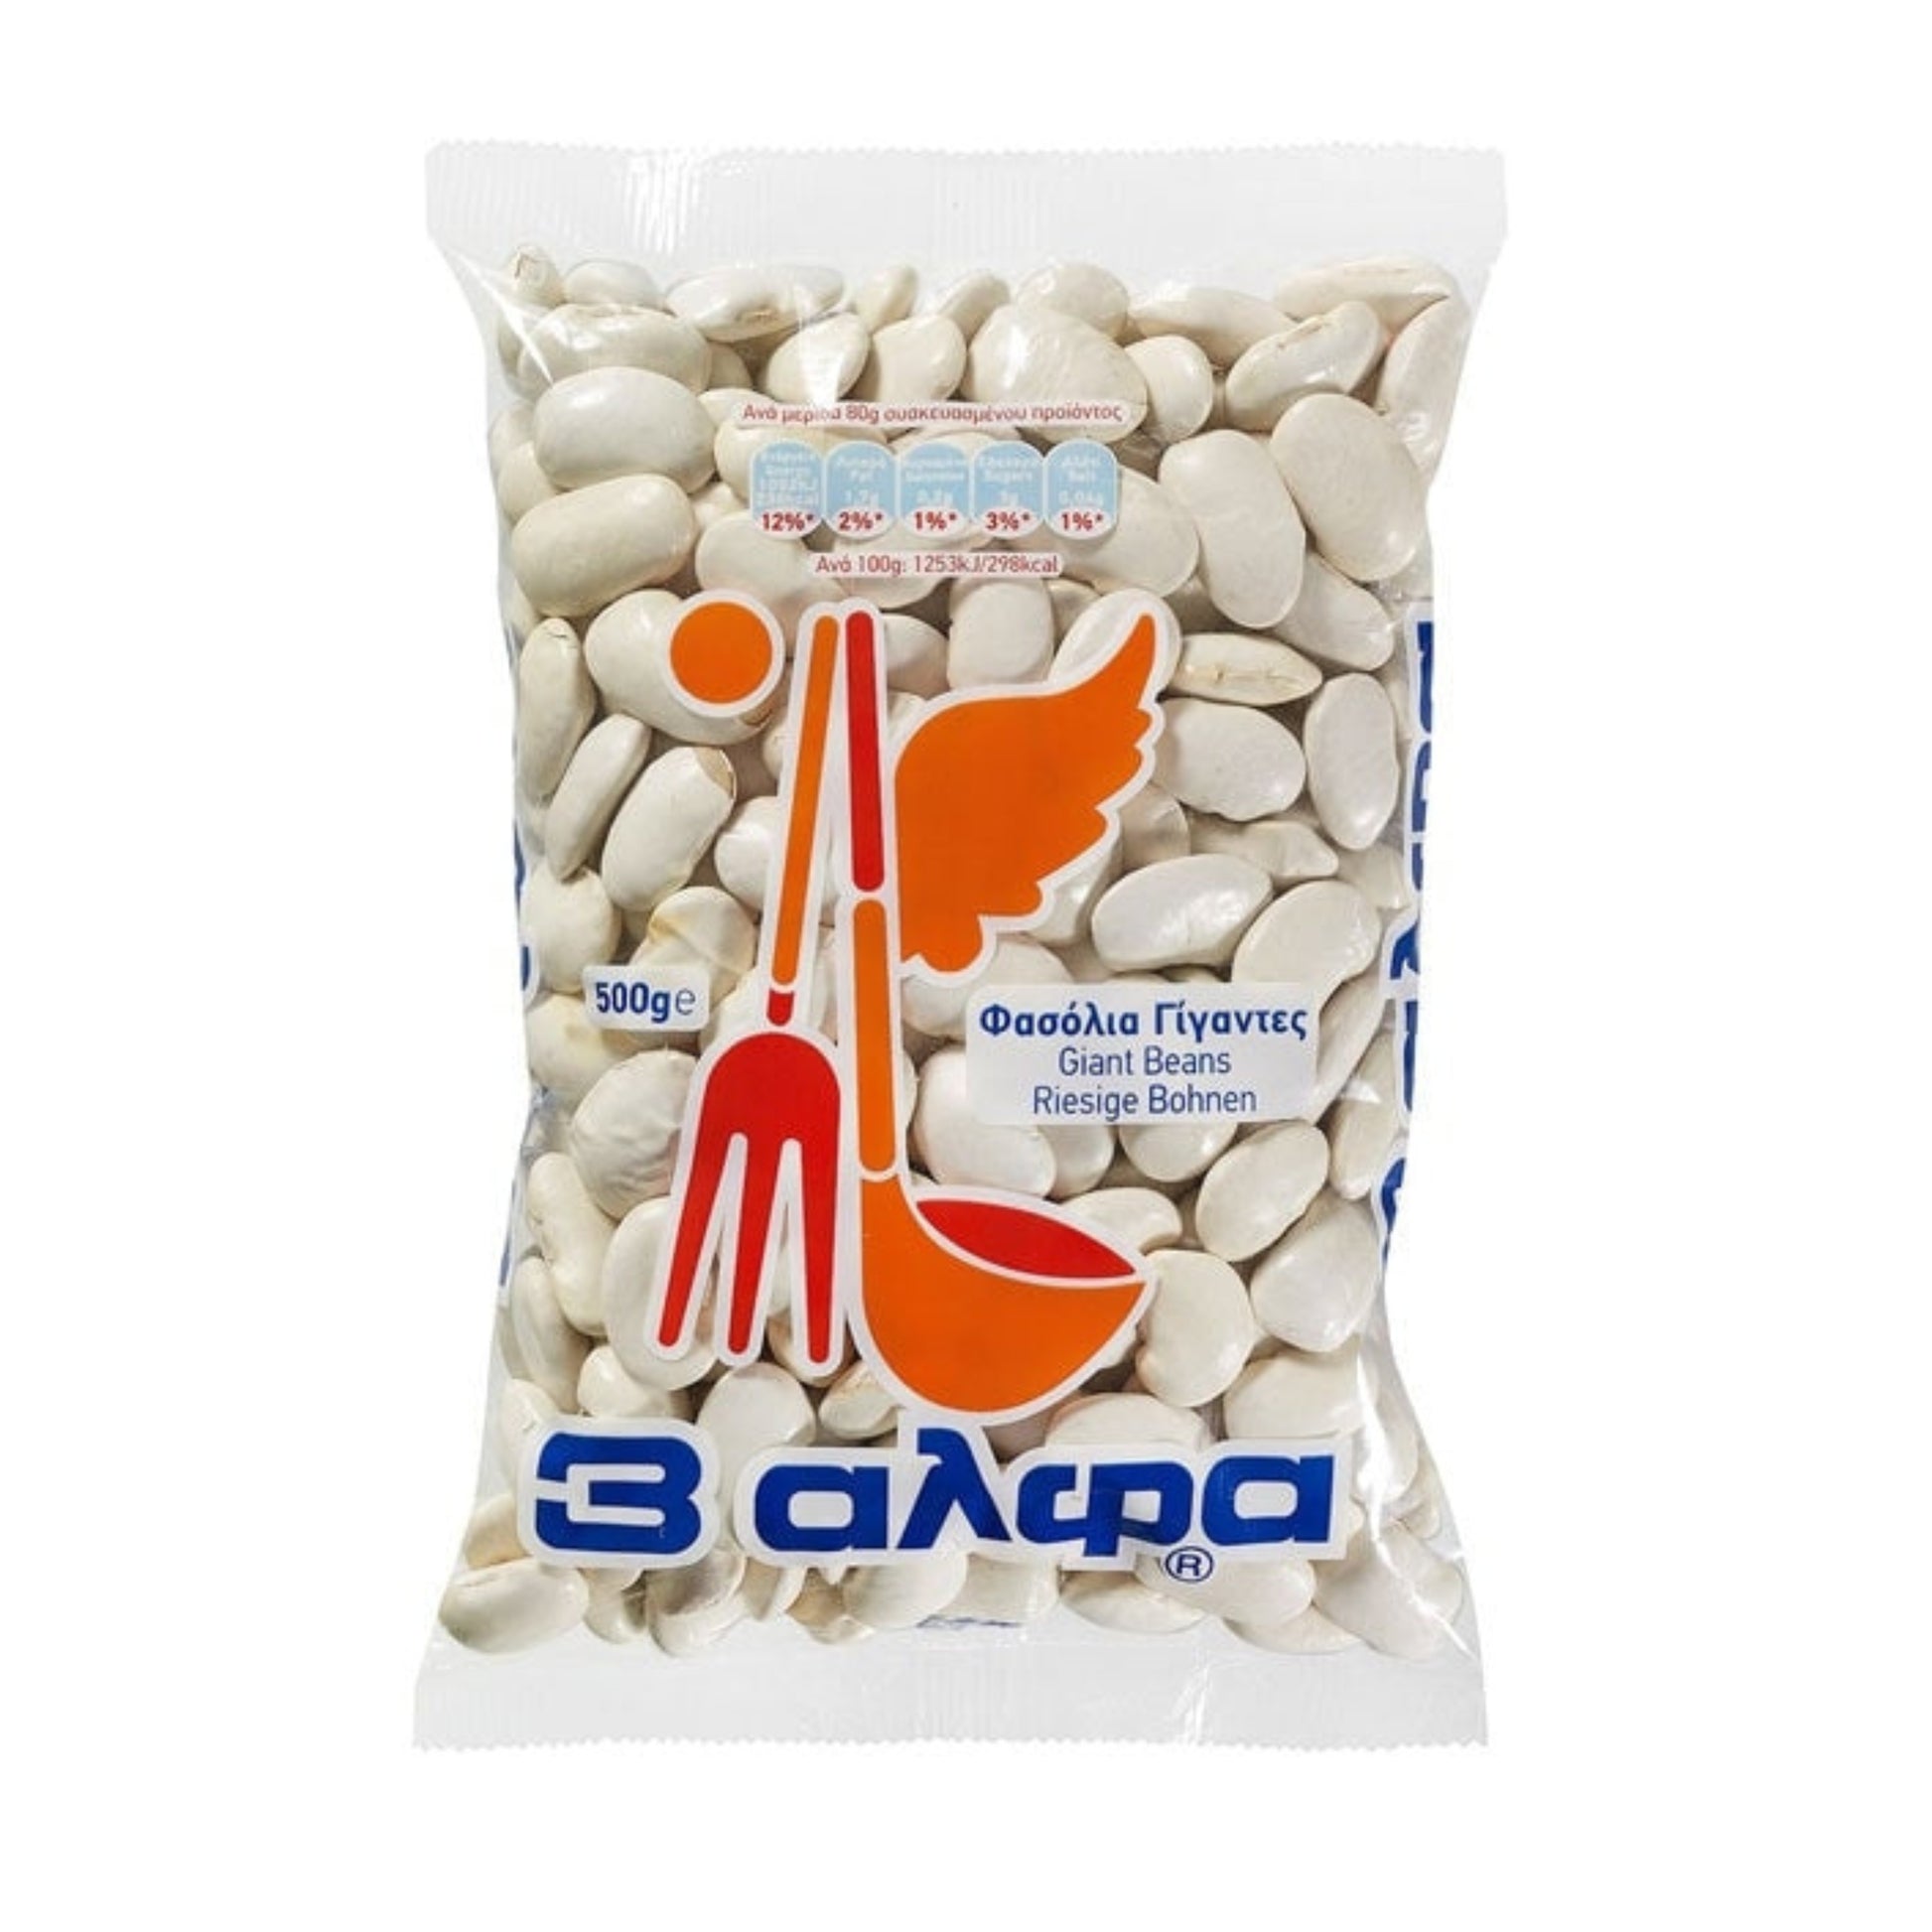 griechische-lebensmittel-griechische-produkte-gigantes-bohnen-500g-3-alfa